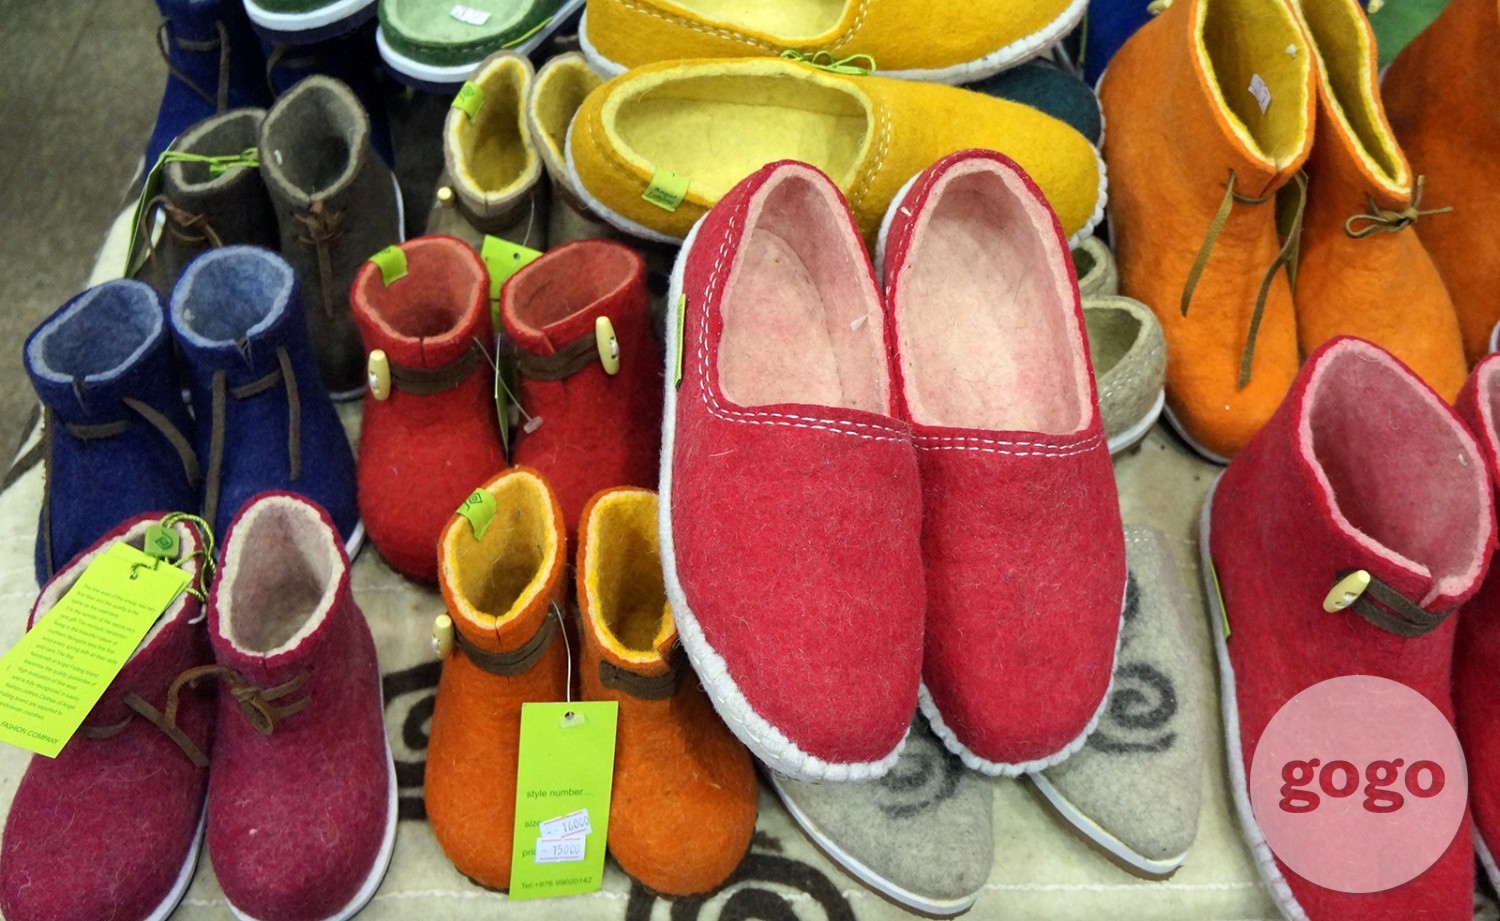 Felt slippers for adult (MNT 18.000) For children (MNT 15.000)